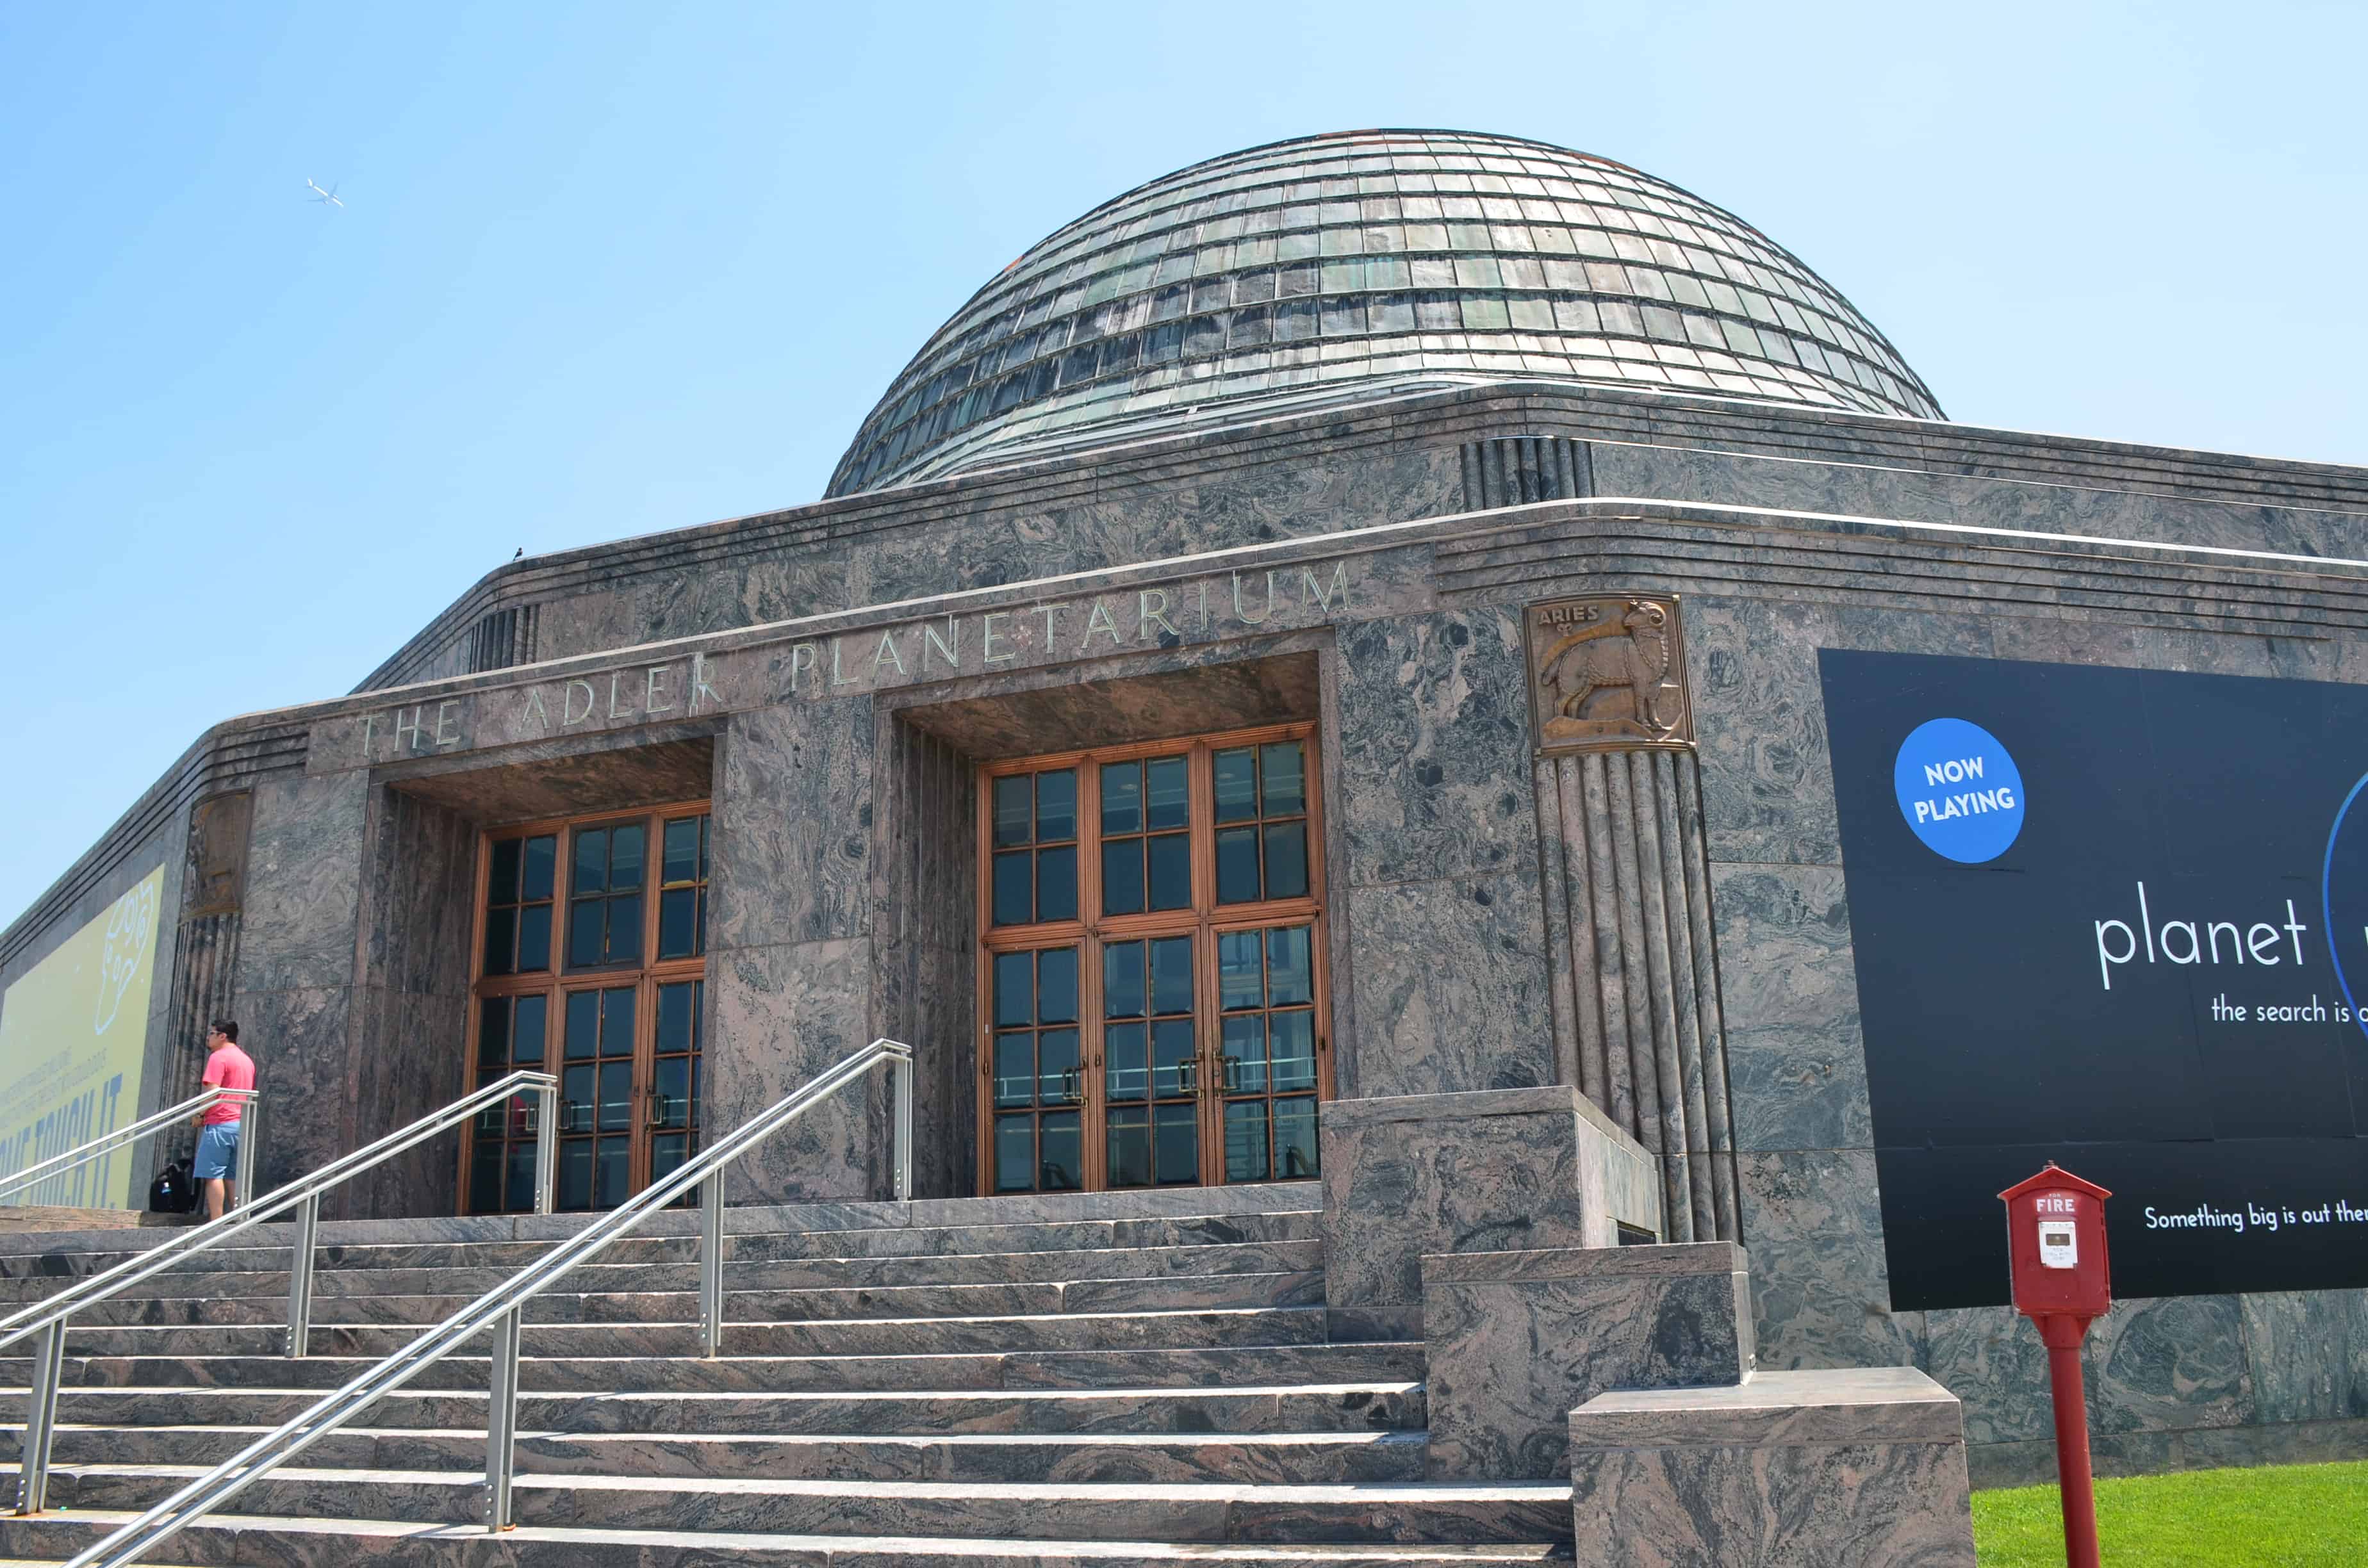 Adler Planetarium in Chicago, Illinois